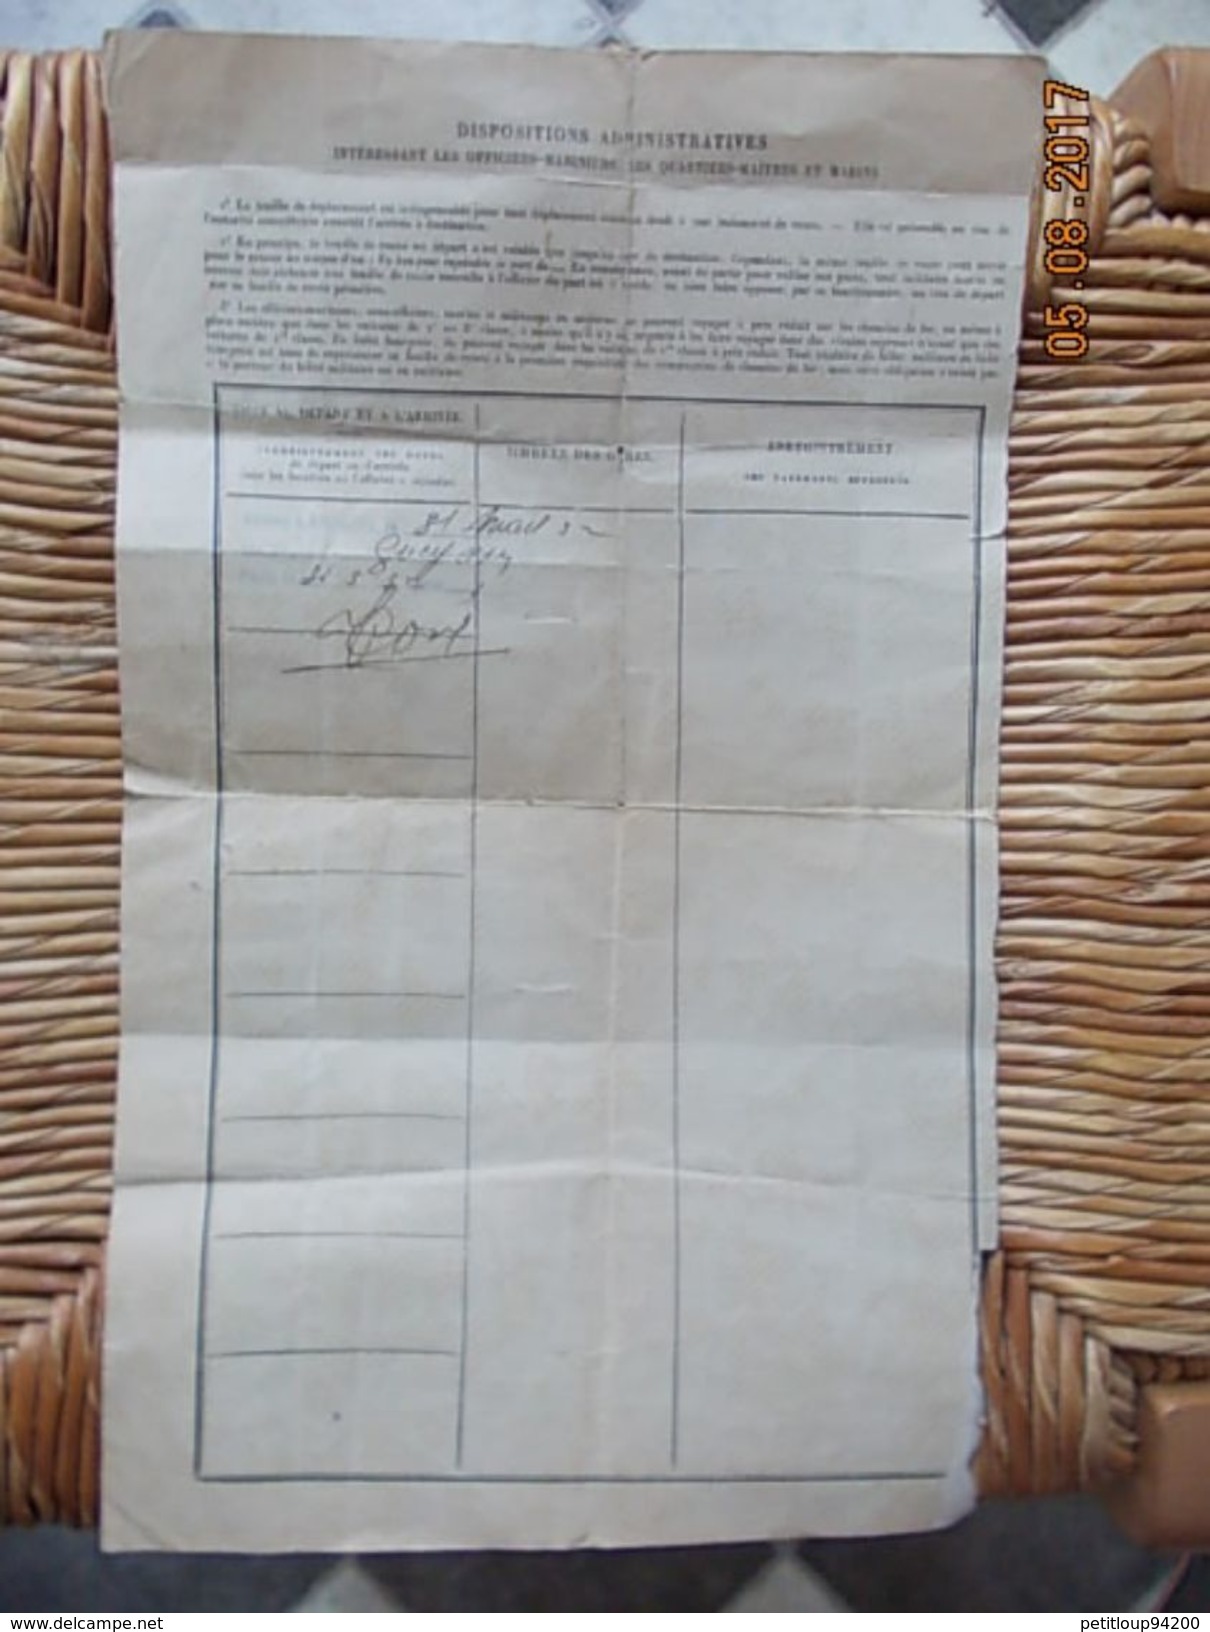 MARINE NATIONALE  Feuille De Déplacement  B.P.A. De SIDI-AHMED  *Bizerte TUNISIE  *Issy-les-Moulineaux  MARS1932 - Documents